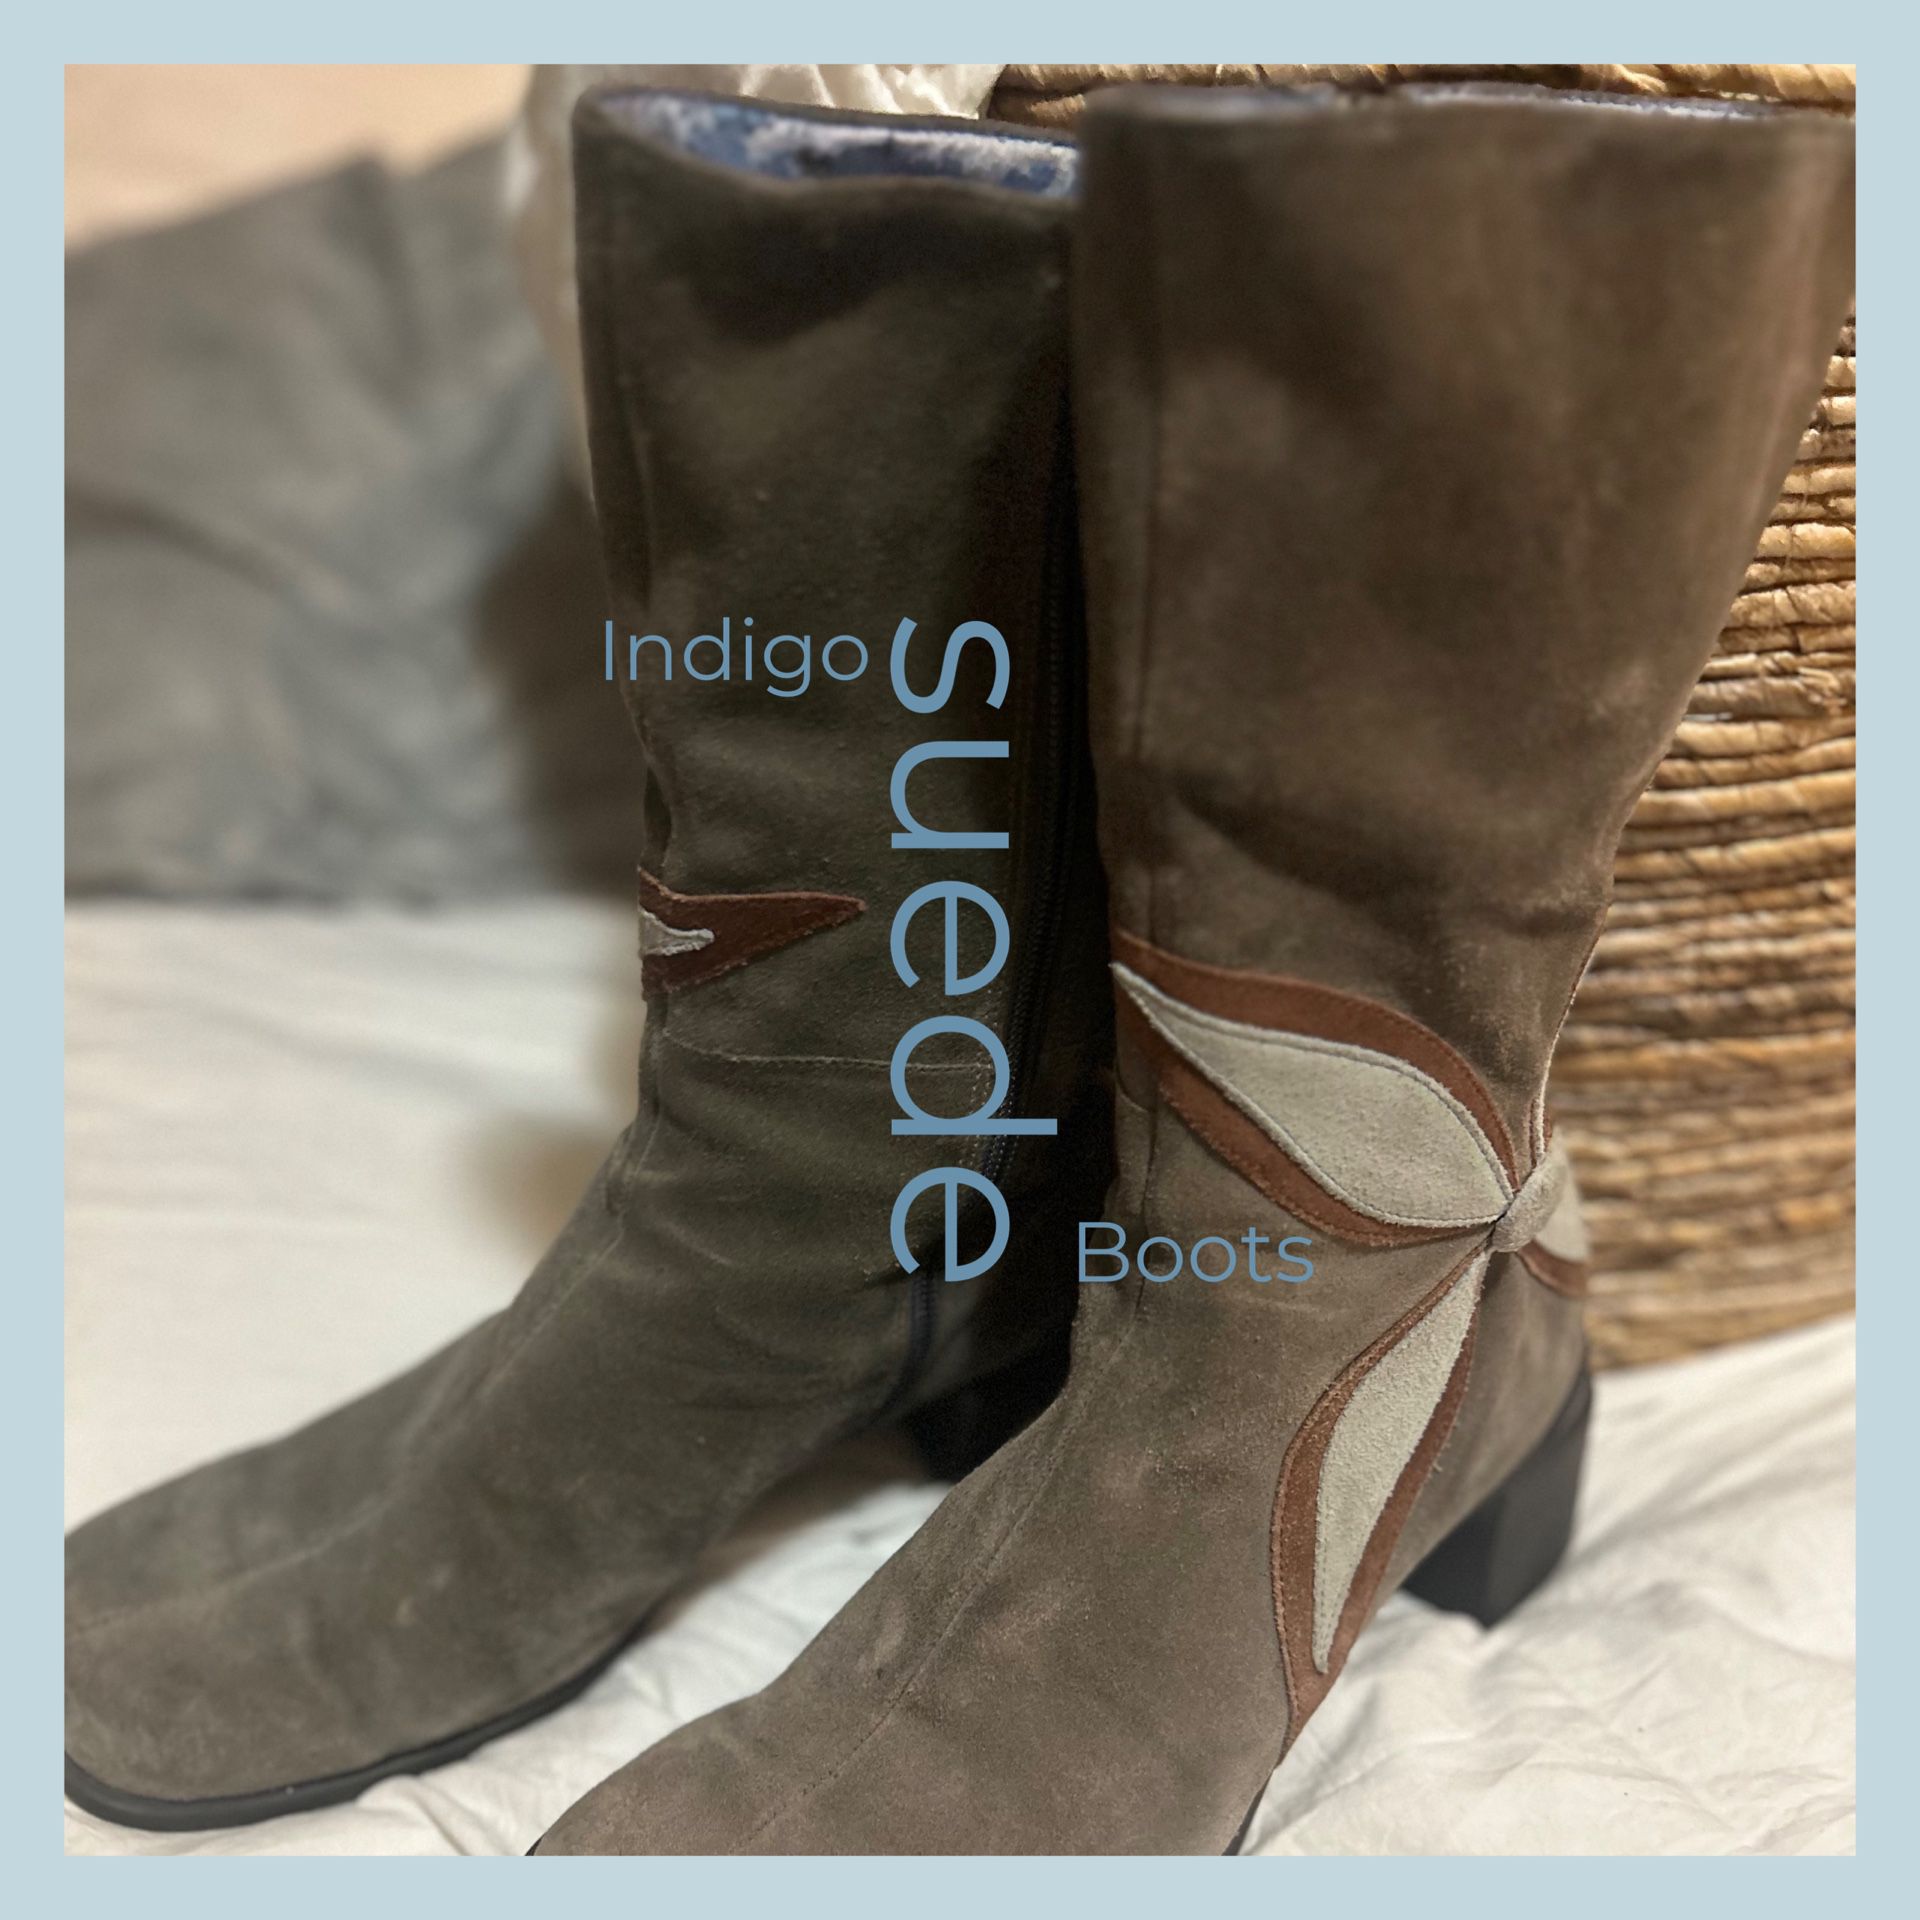 Vintage Suede Indigo Boots